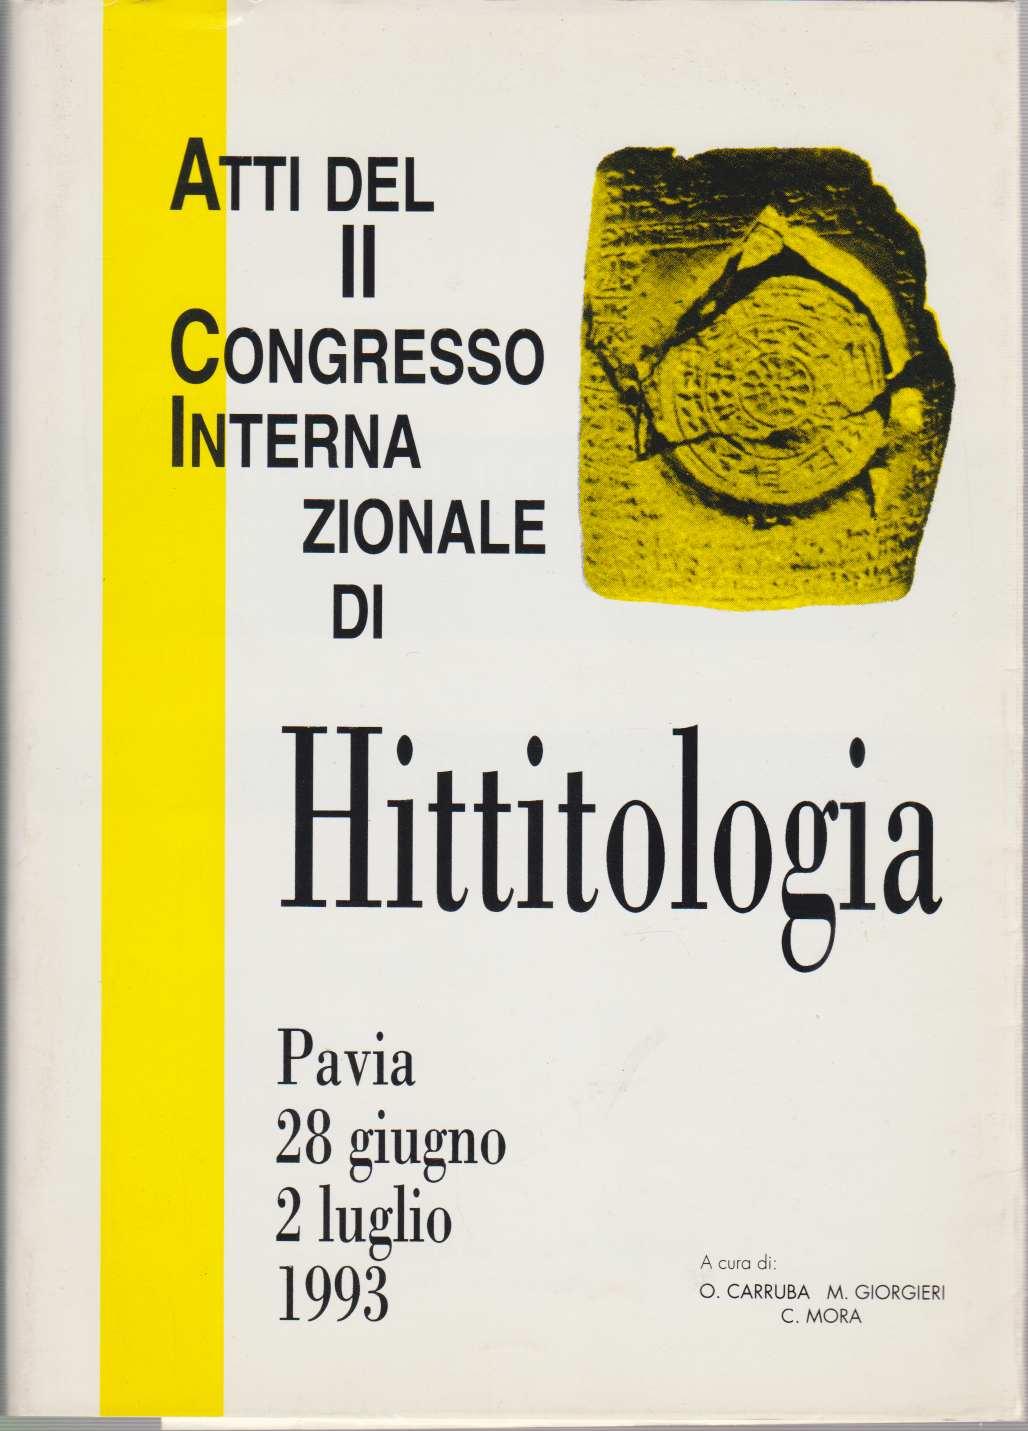 Atti del Congresso Internazionale di Hittitologia. Studia Mediterranea 9. - Carruba, Onofrio, Mauro Giorgieri und Clelia Mora (eds.)